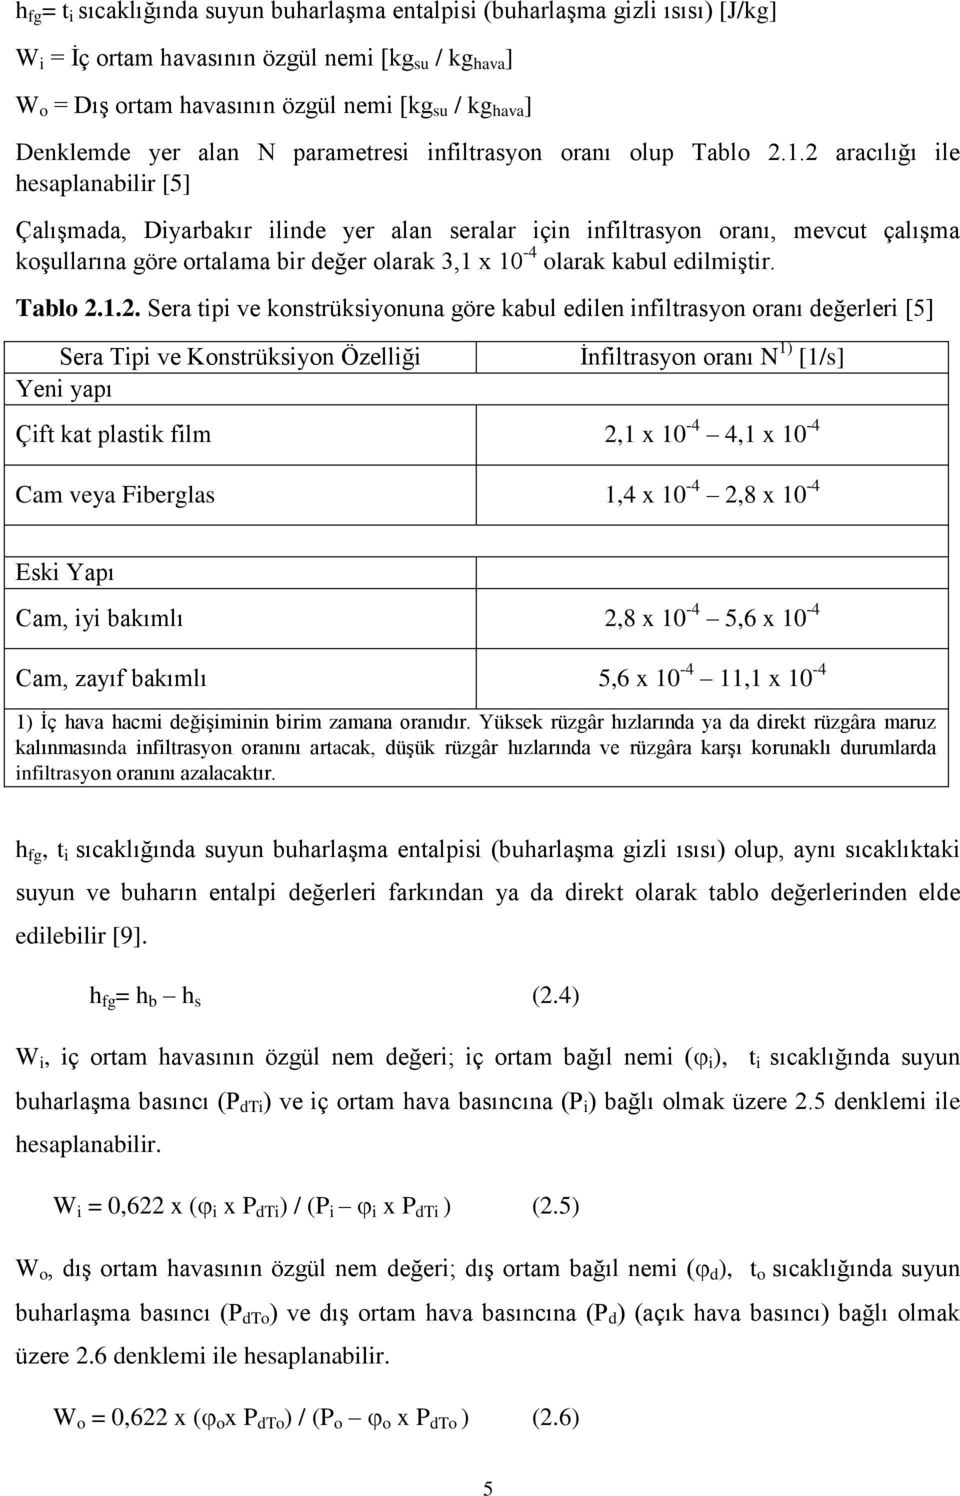 2 aracılığı ile hesaplanabilir [5] Çalışmada, Diyarbakır ilinde yer alan seralar için infiltrasyon oranı, mevcut çalışma koşullarına göre ortalama bir değer olarak 3,1 x 10-4 olarak kabul edilmiştir.